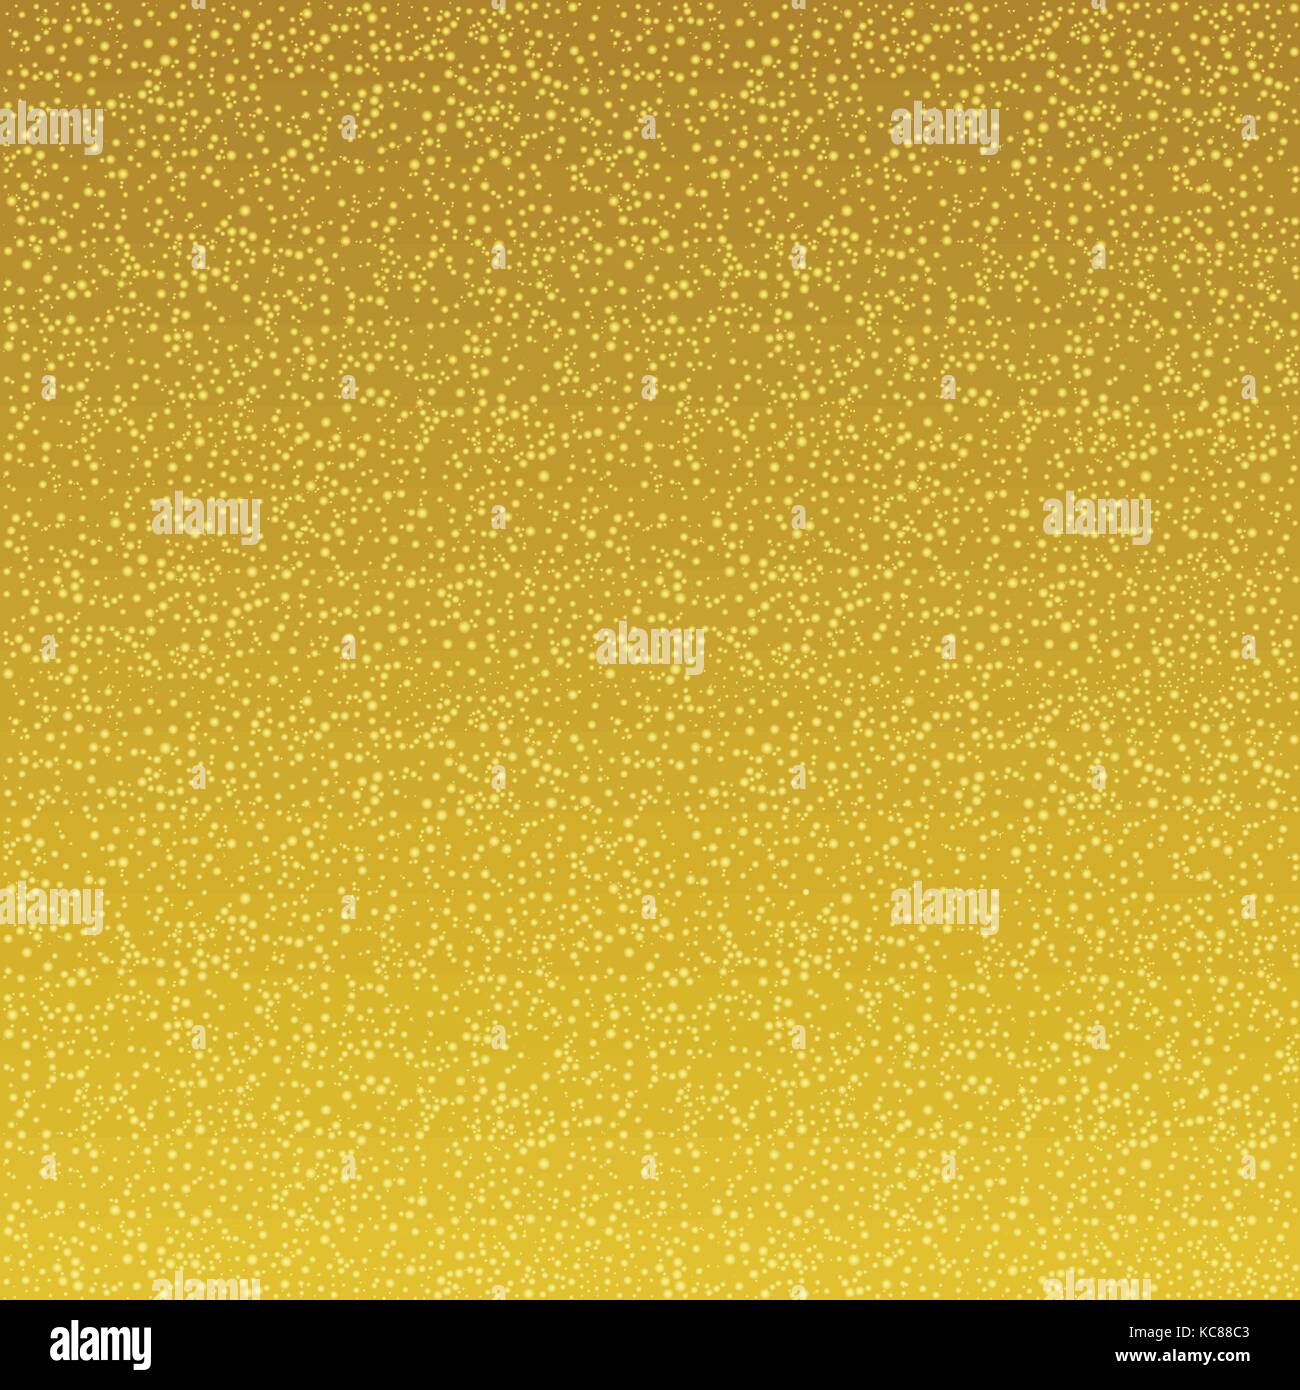 Golden stars background Stock Vector